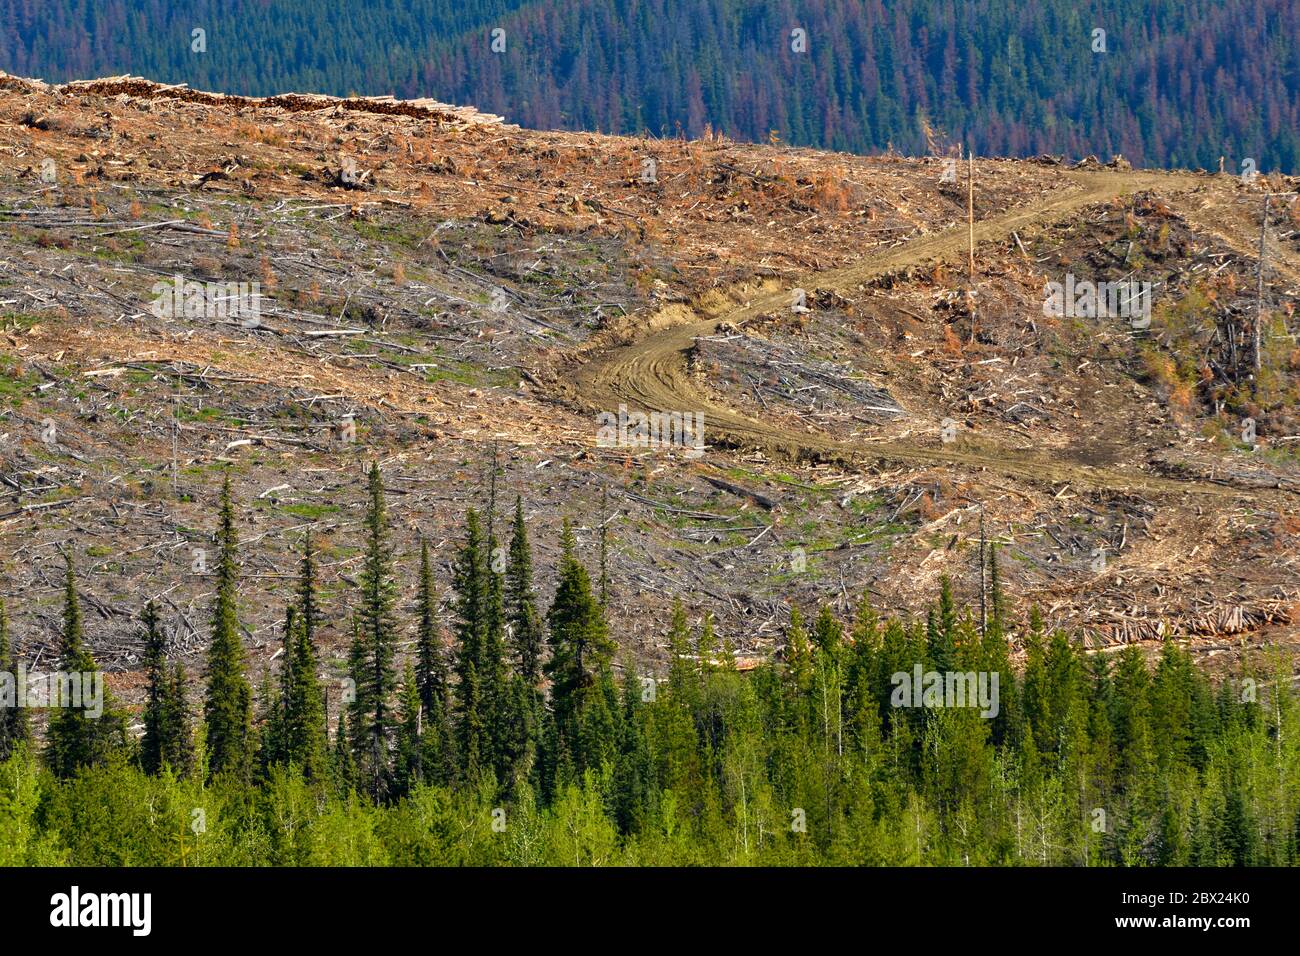 Ein Bergrücken im Wald, wo die Bäume geerntet wurden, um die Ausbreitung des Käfer in den Wäldern von Alberta Kanada zu verhindern. Stockfoto